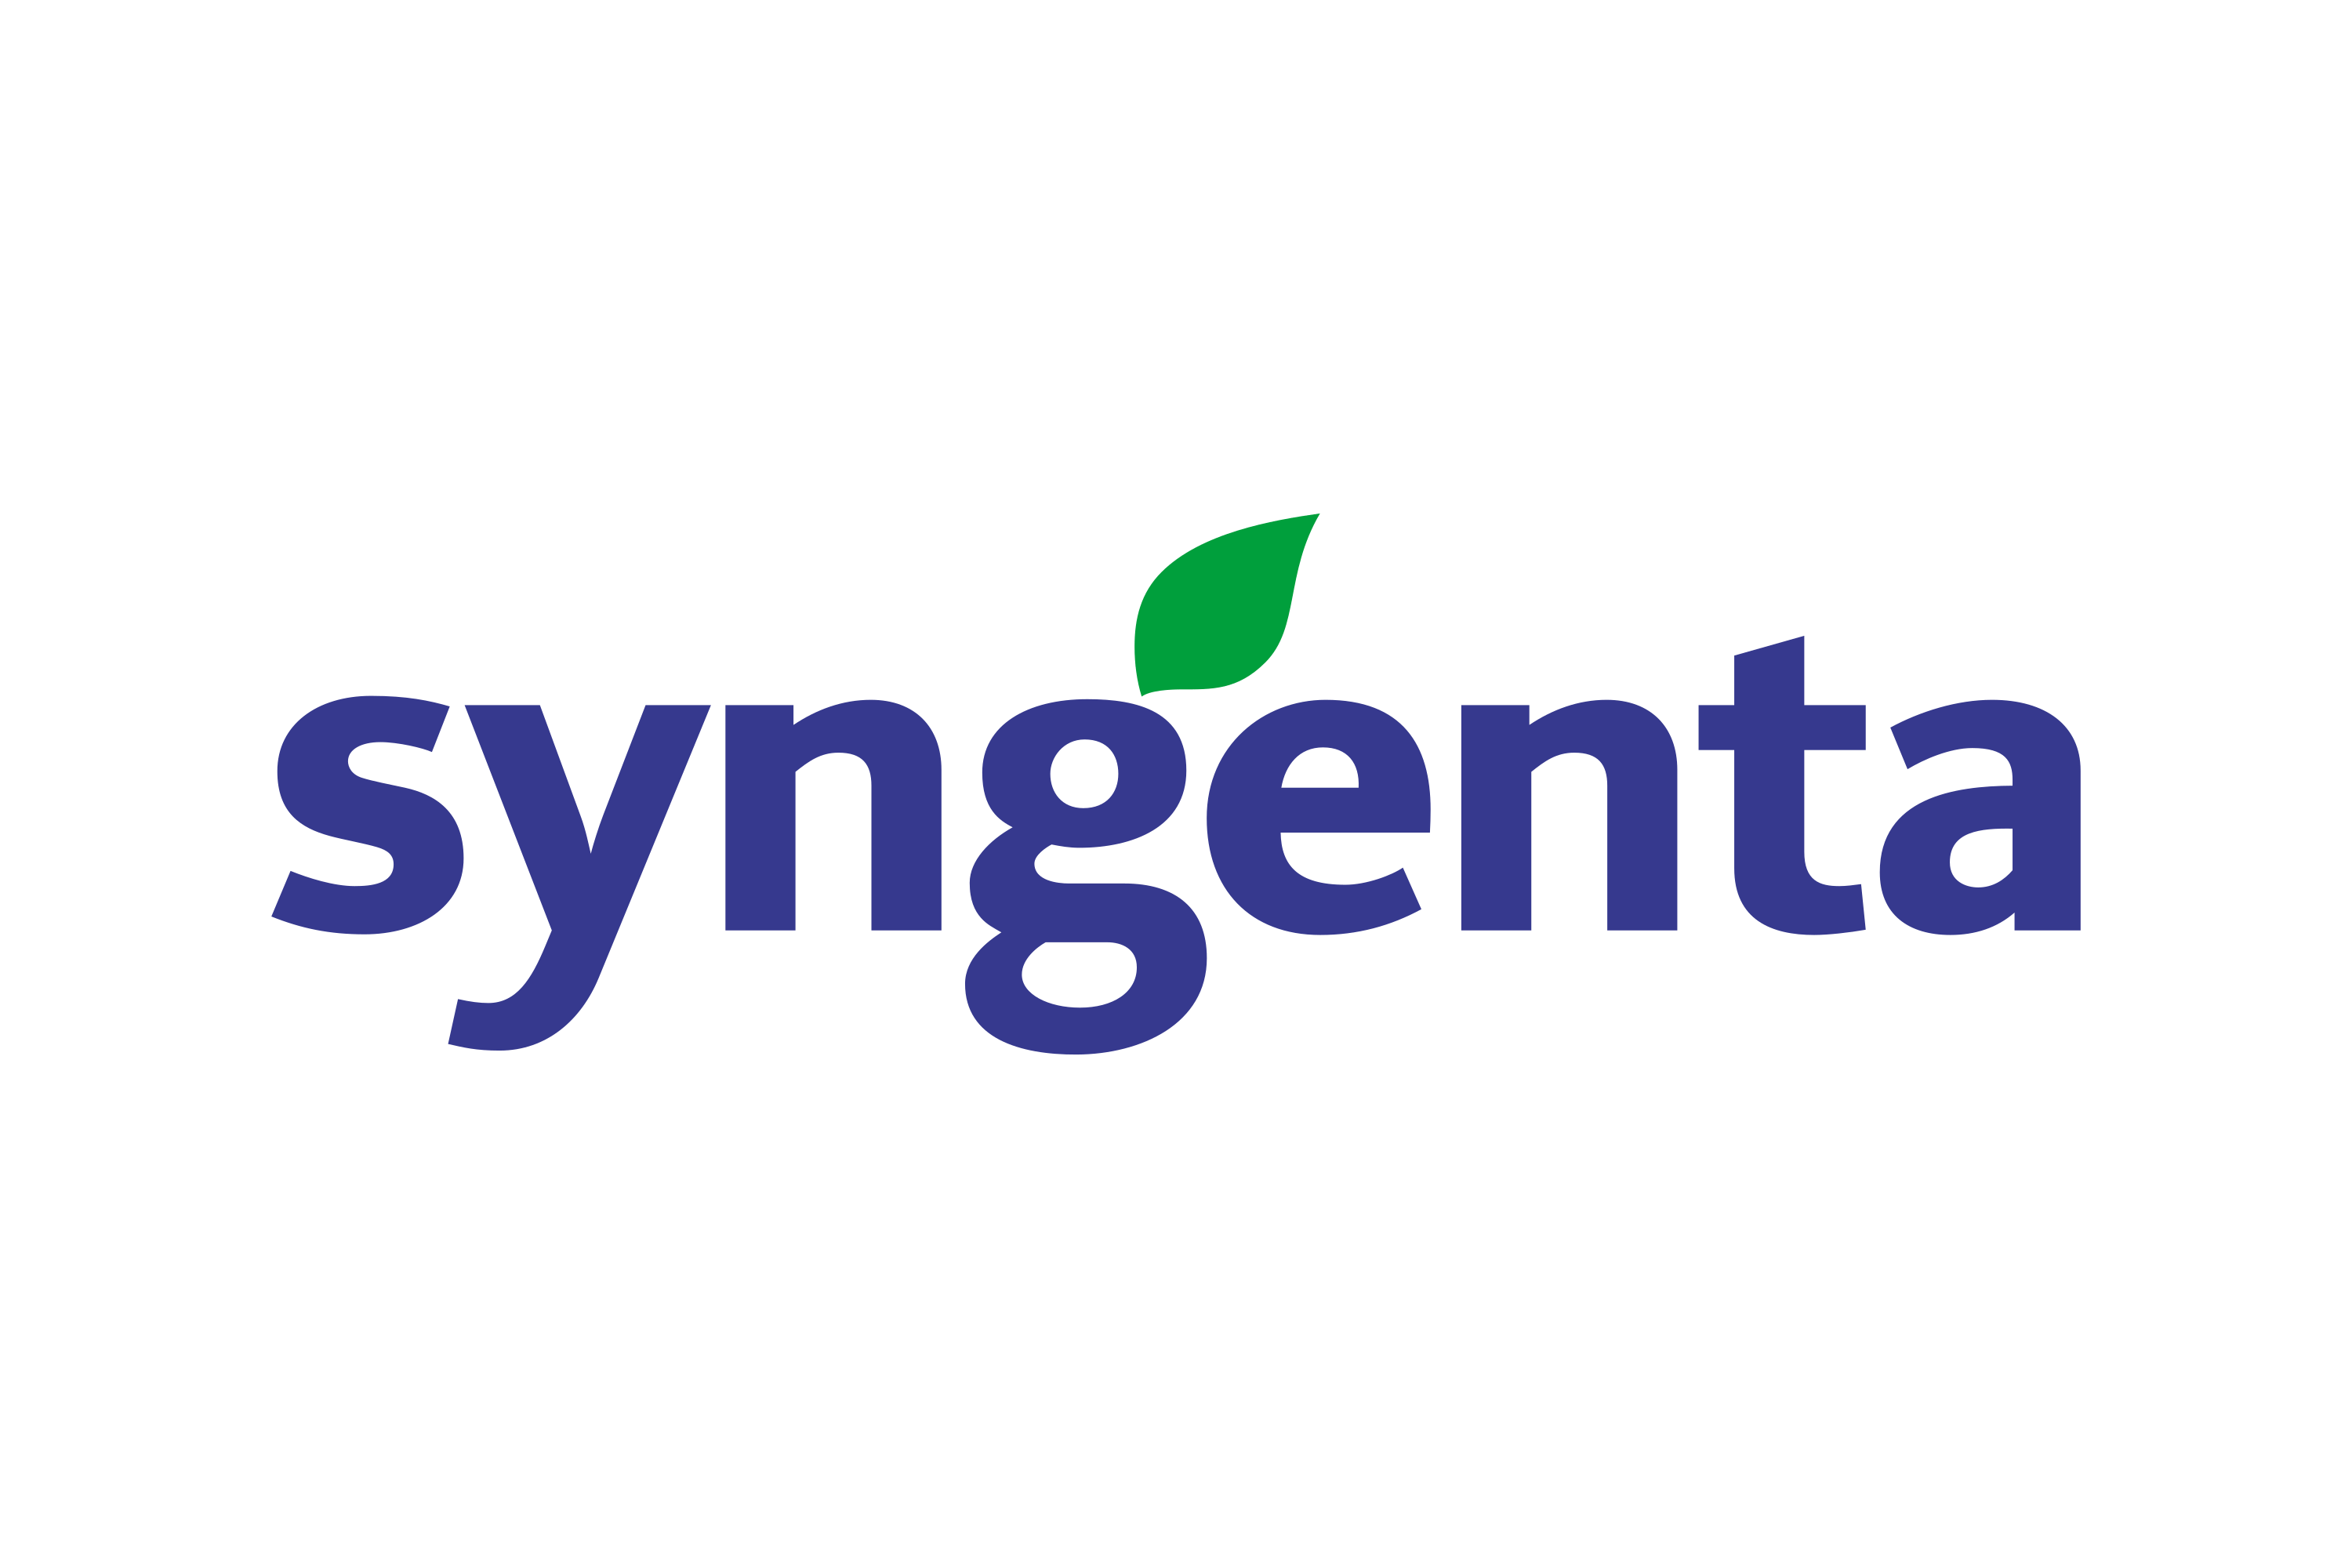 Download Syngenta Logo in SVG Vector or PNG File Format - Logo.wine